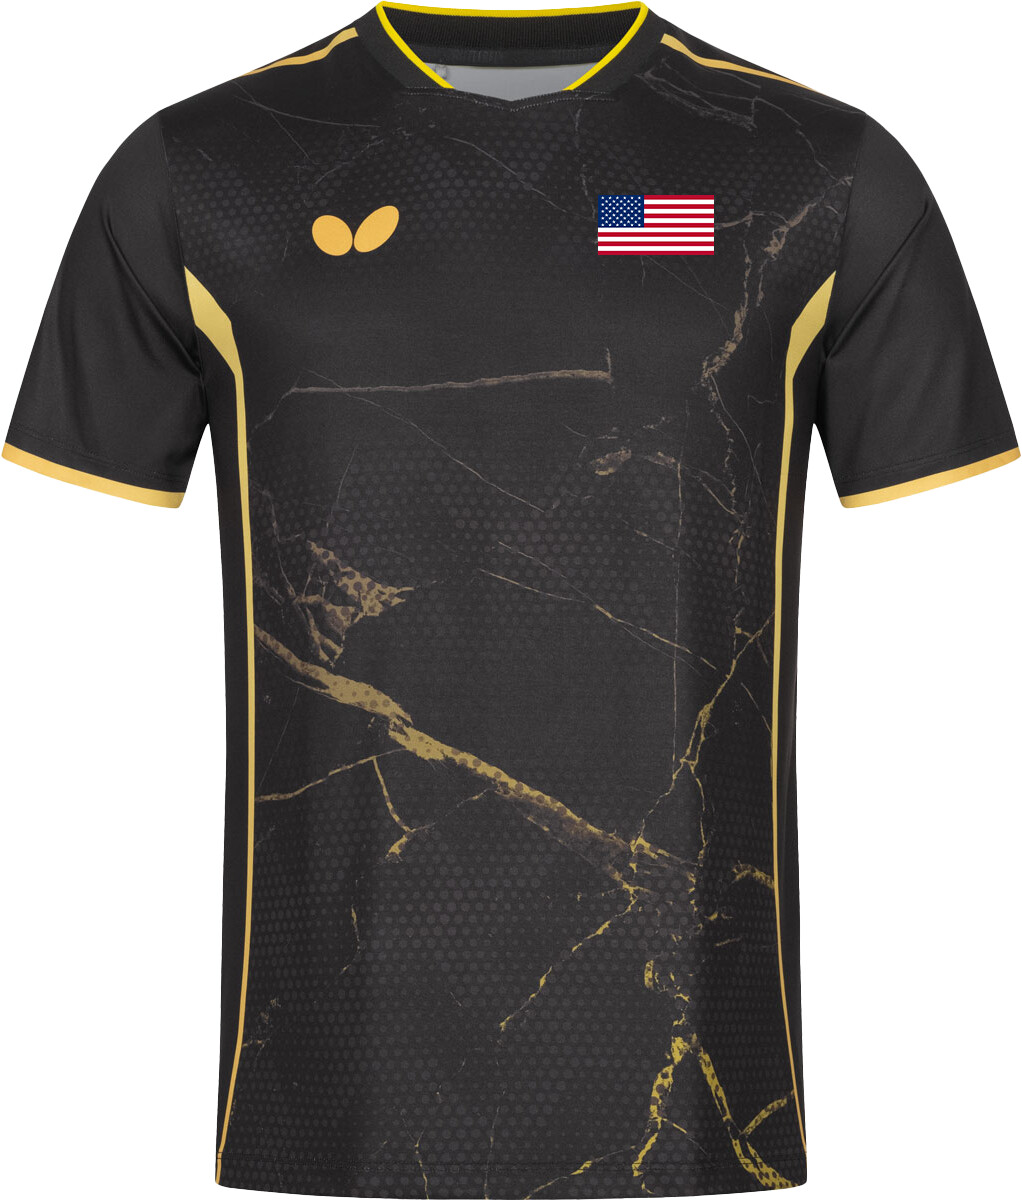 Butterfly USA Team 24 Shirt - Black